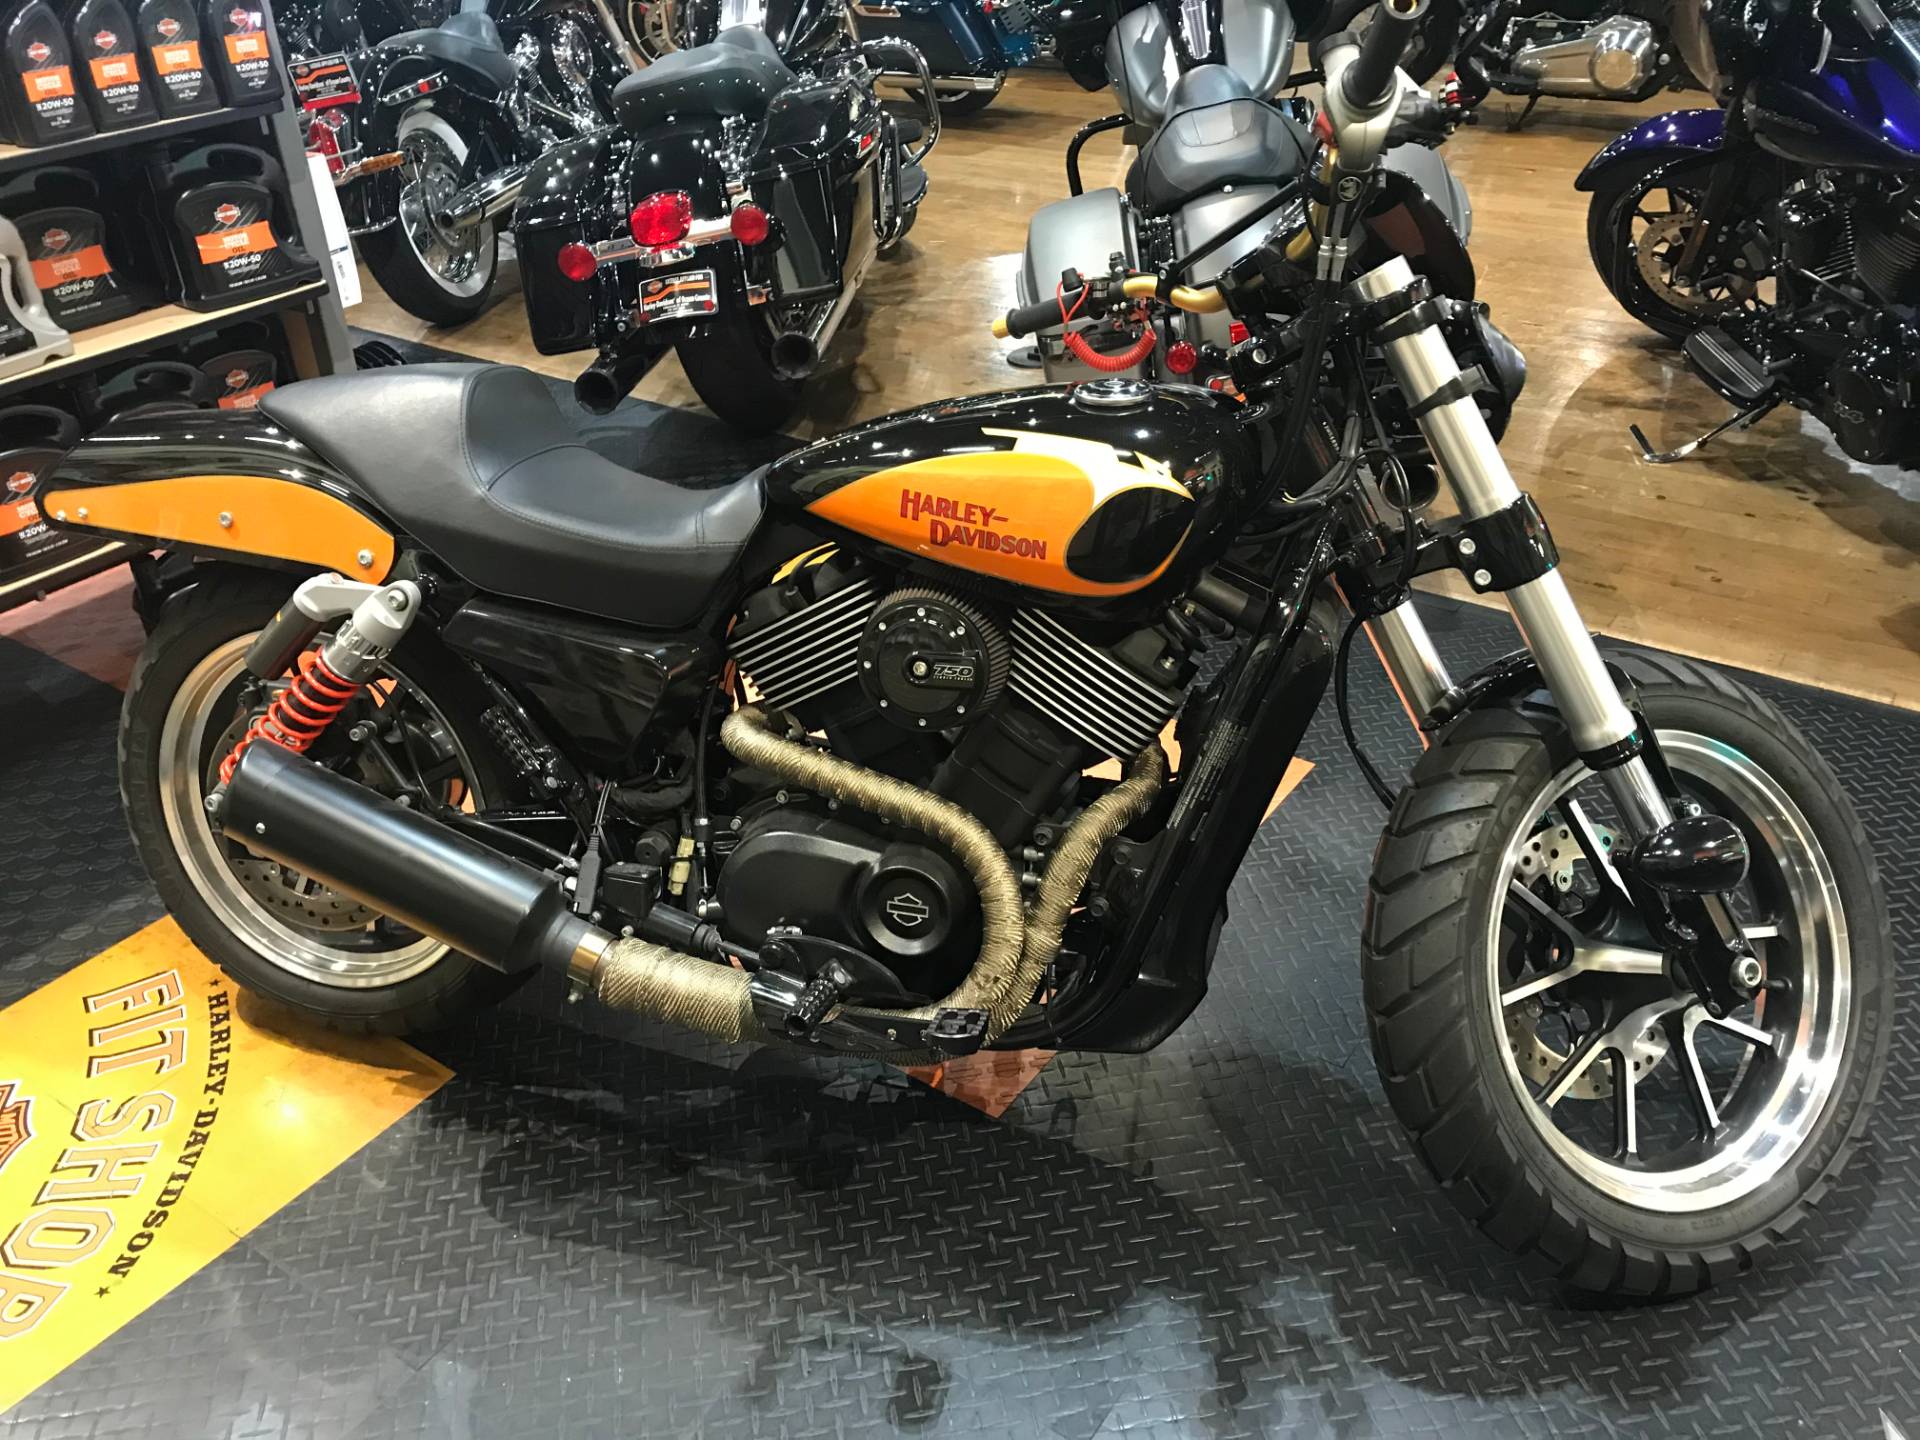 Used 2015 Harley Davidson Street 750 Custom Motorcycles In Lakewood Nj Xg0215209